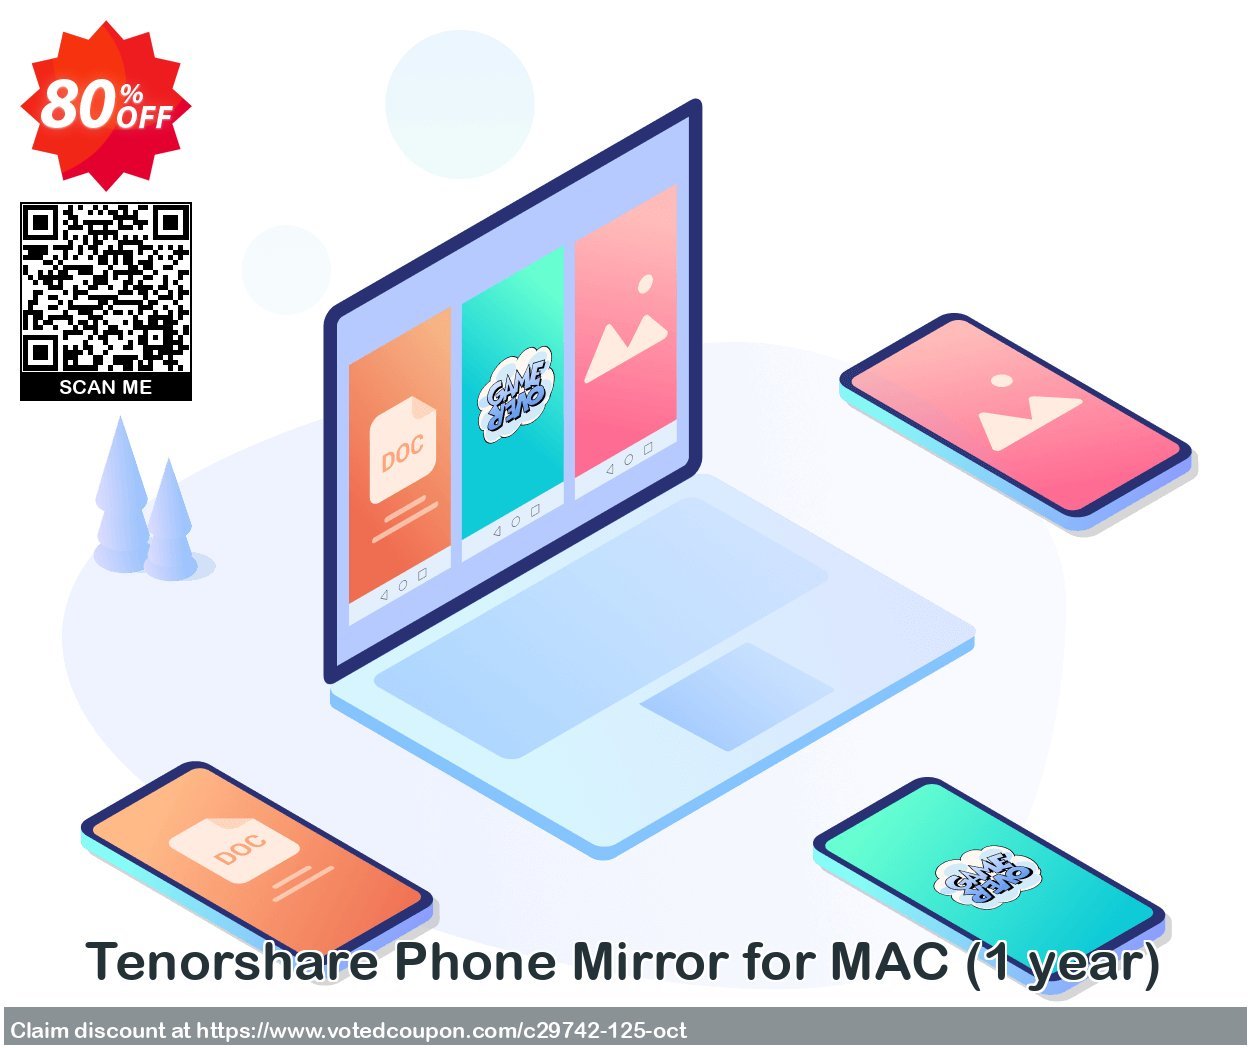 Tenorshare Phone Mirror for MAC, Yearly 